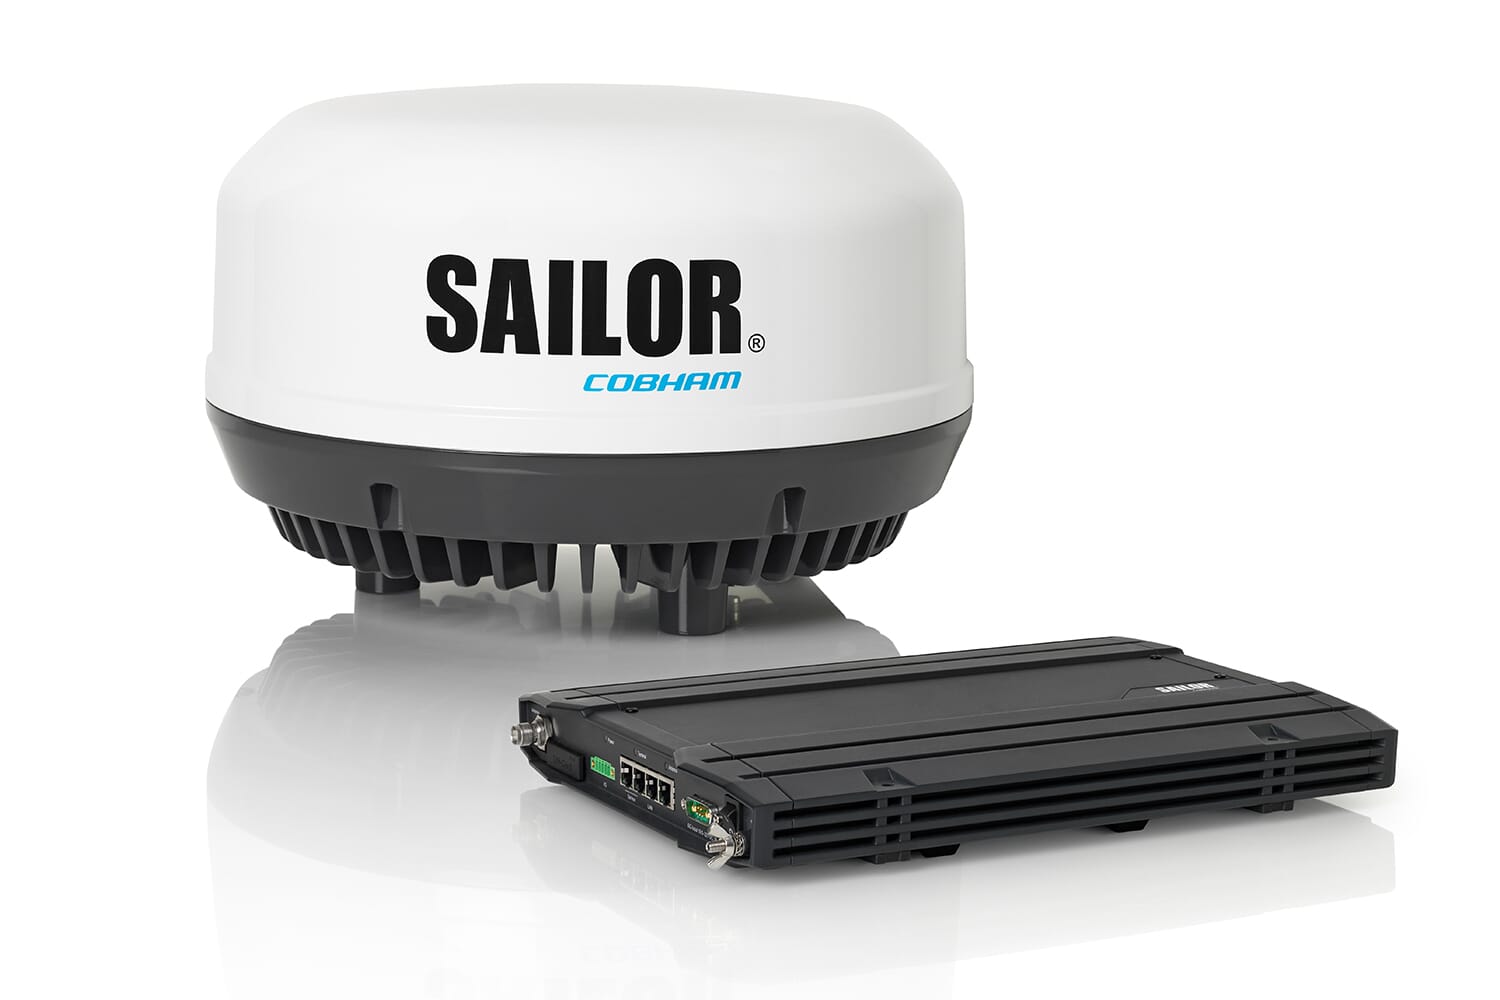 sailor iridium control unit handset